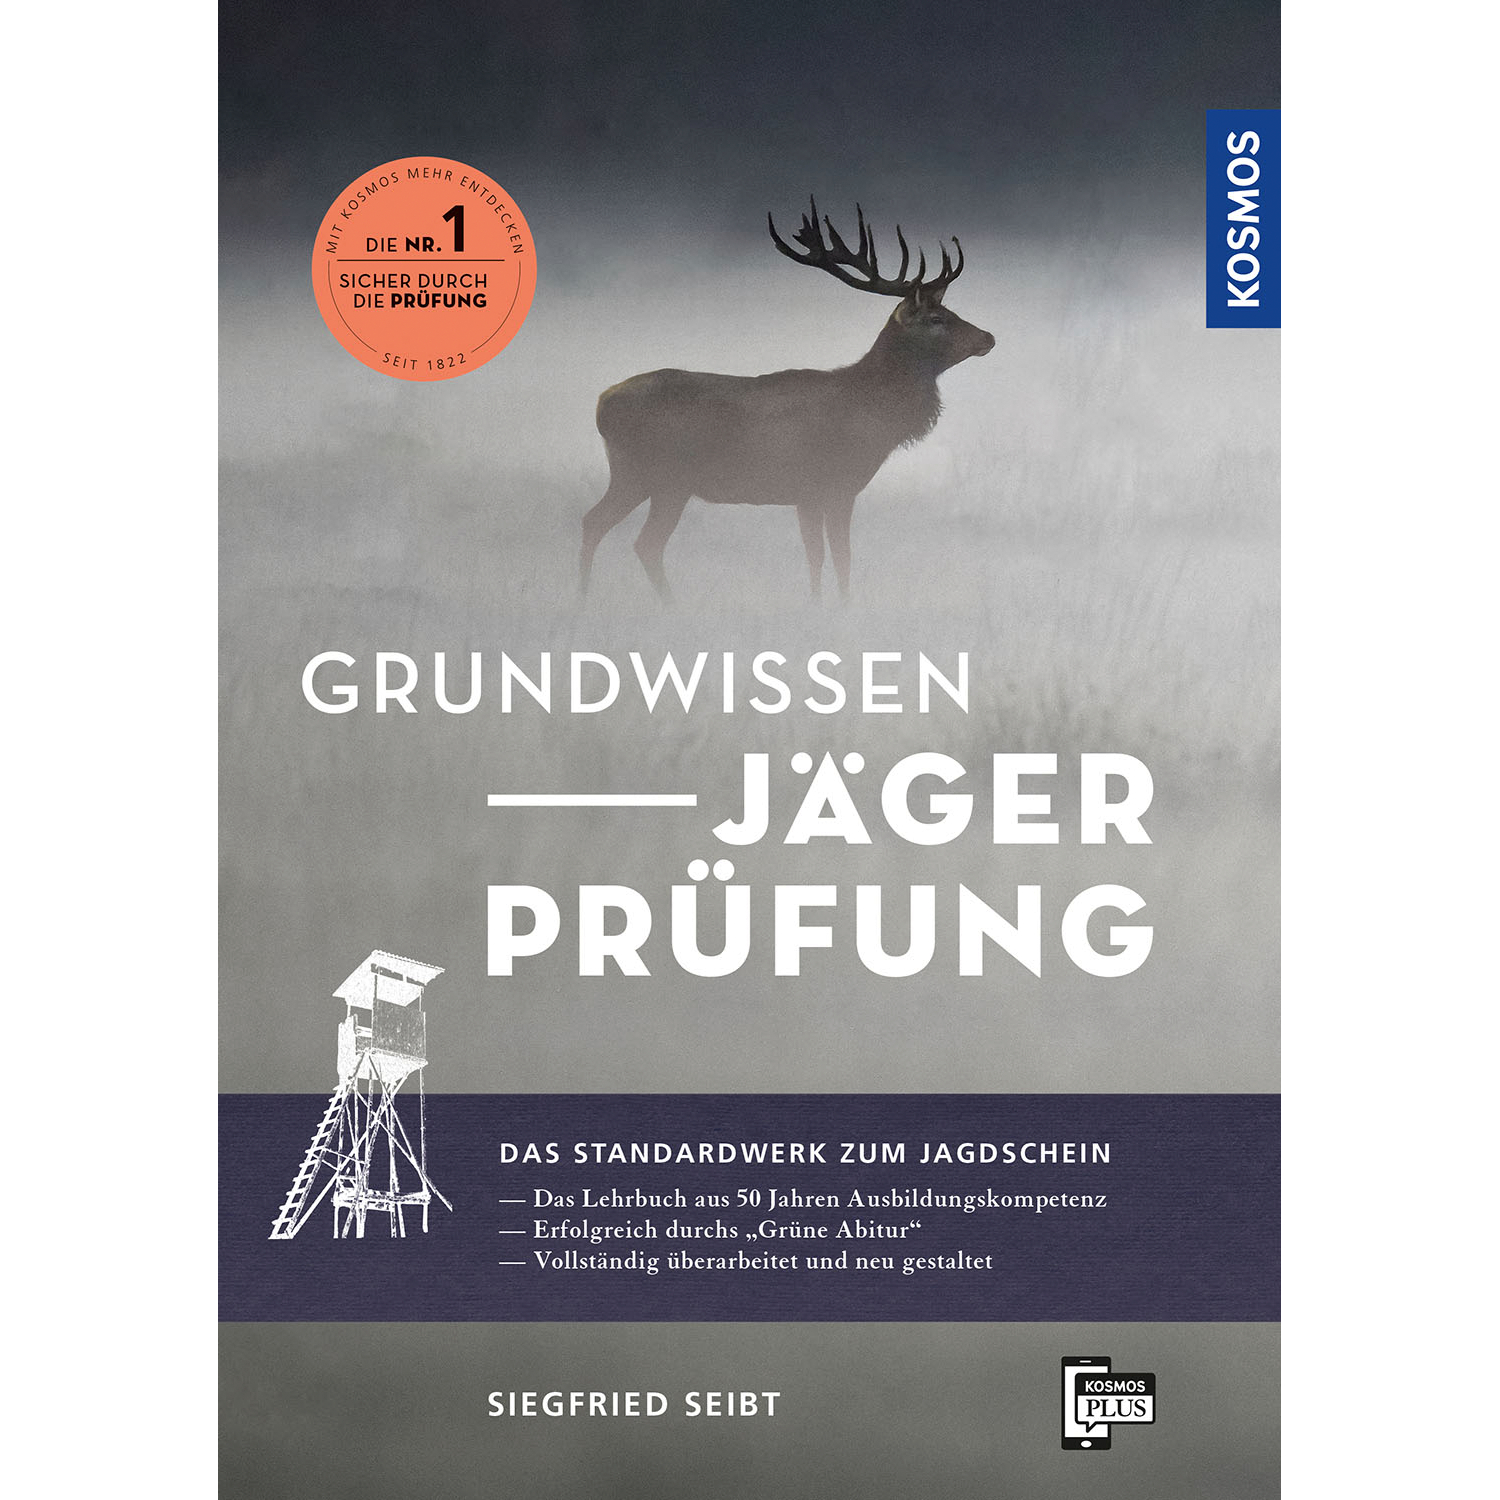 Grundwissen Jägerprüfung. Das Standardwerk zum Jagdschein (Siegfried Seibt, German Book) 